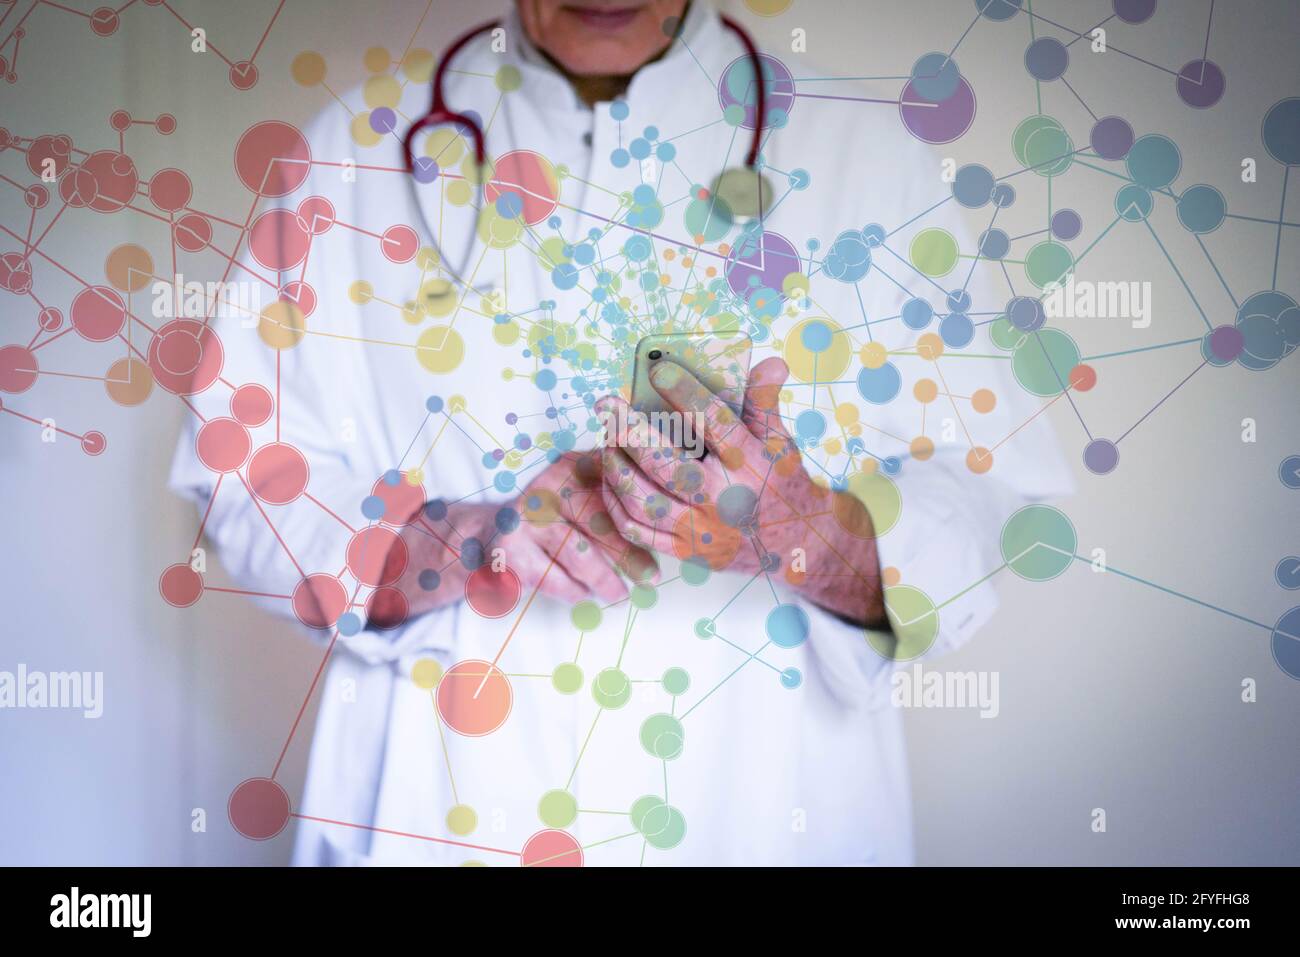 Immagine concettuale della rete e del medico. Foto Stock